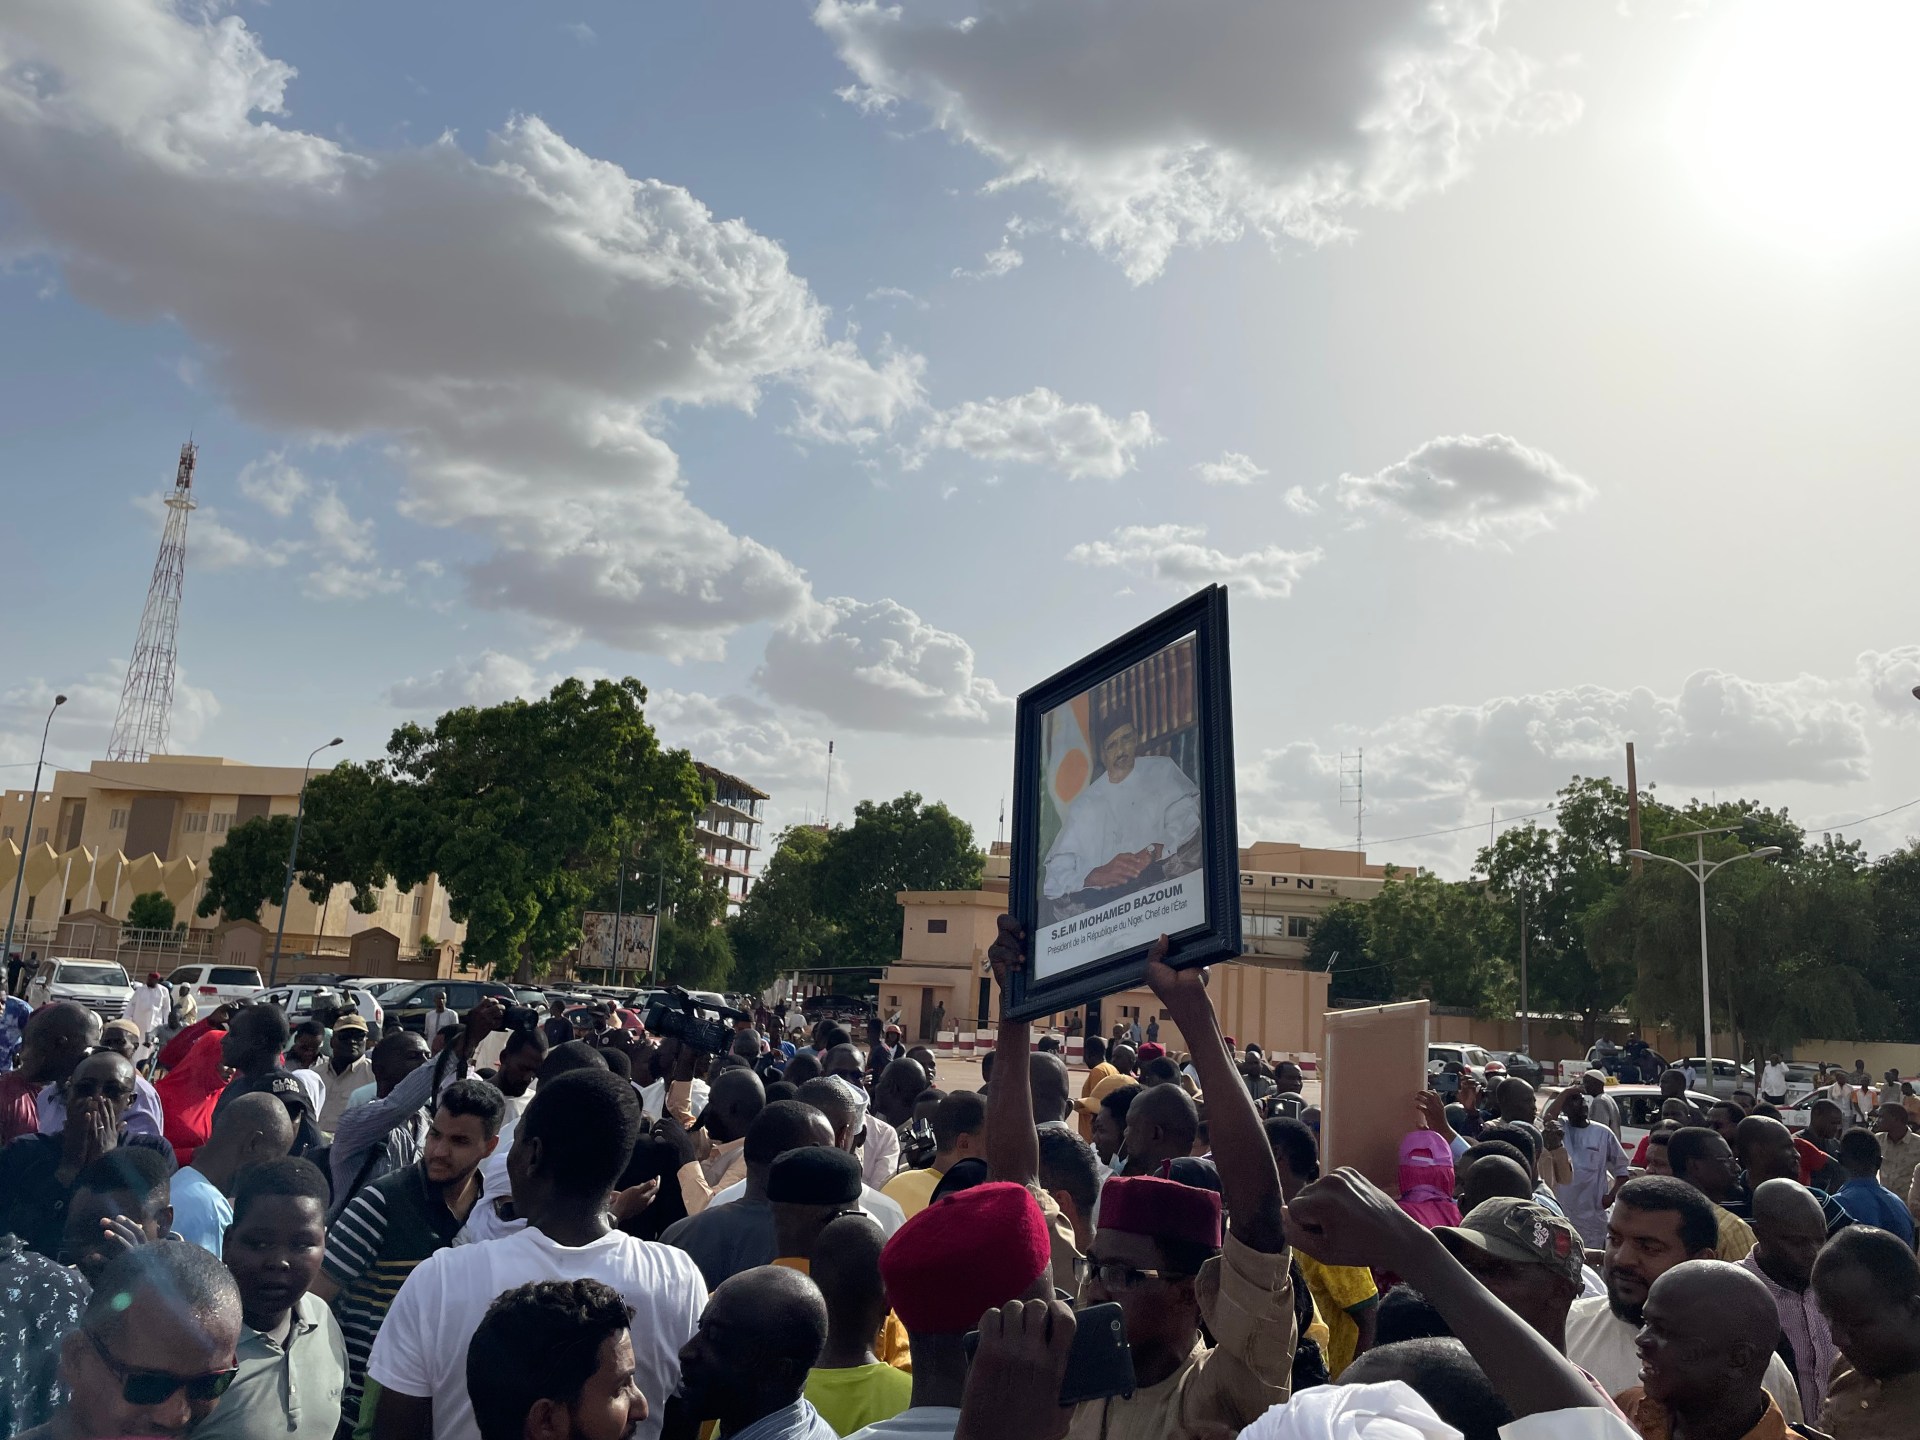 blok Afrika Barat mengirimkan delegasi ke Niger, kata kekerasan adalah ‘pilihan terakhir’ |  Berita Militer